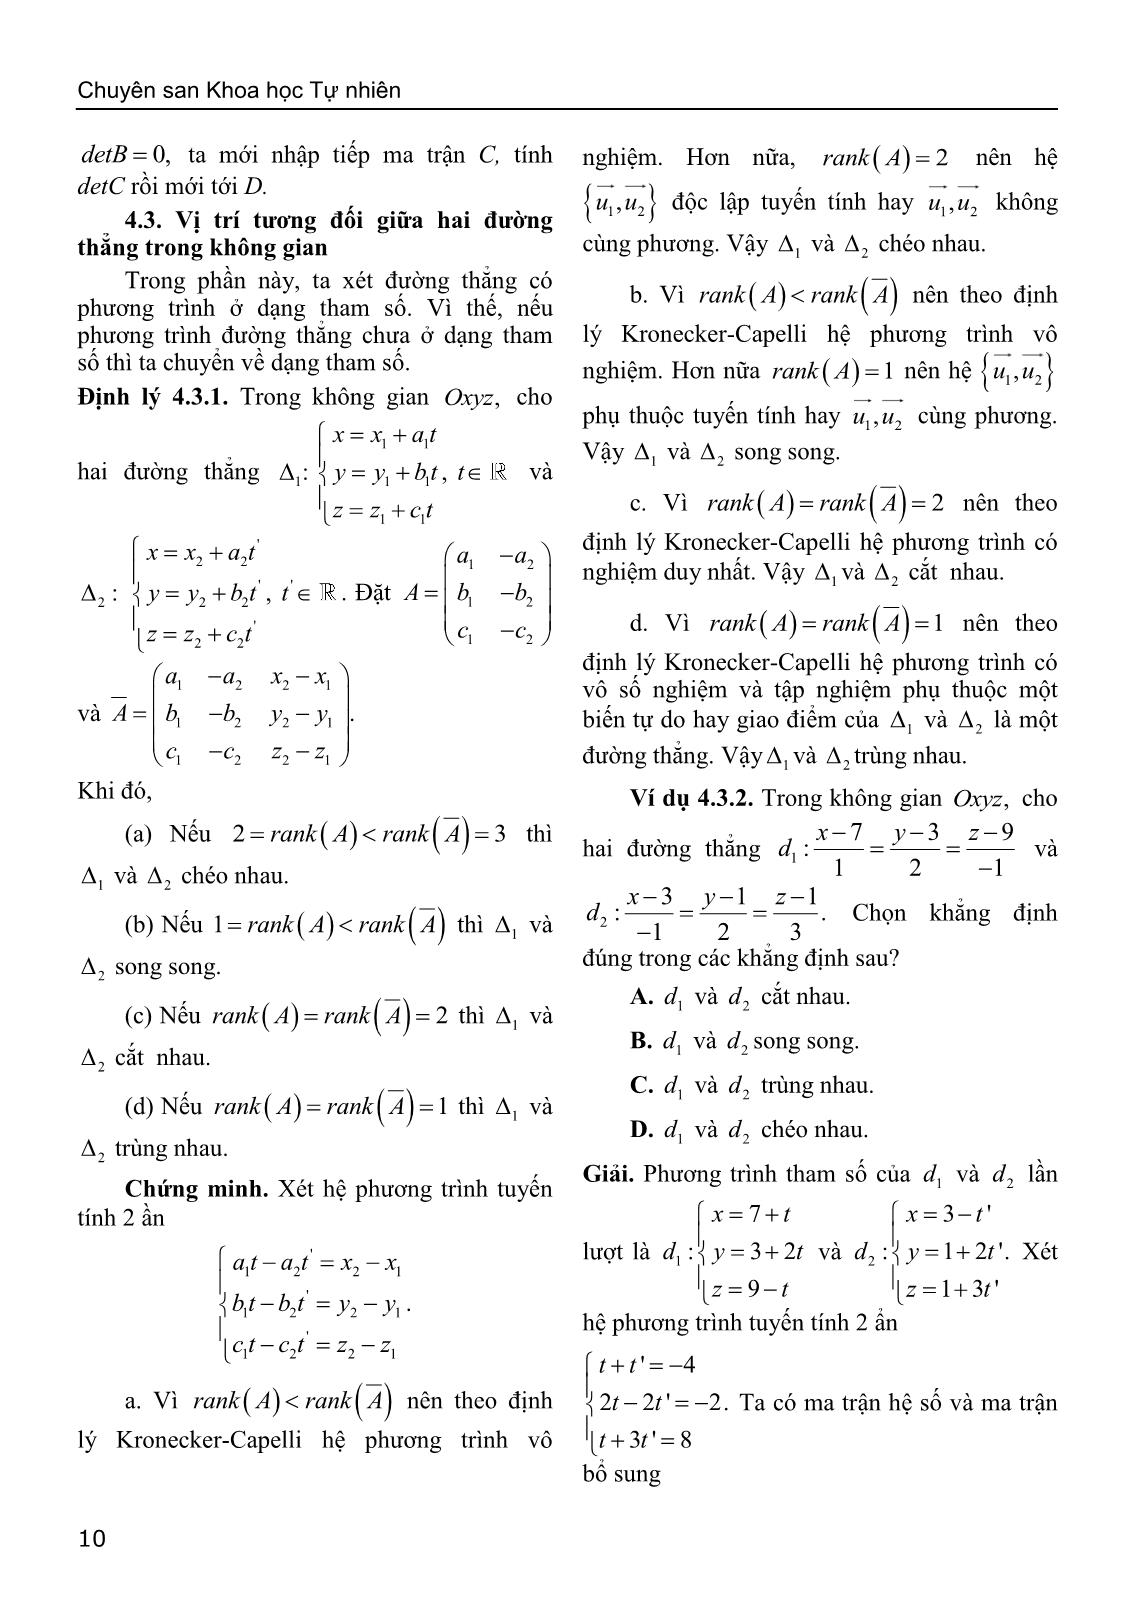 Sử dụng định lý Kronecker-Capelli giải bài toán về vị trí tương đối của hình học giải tích trong không gian trang 8